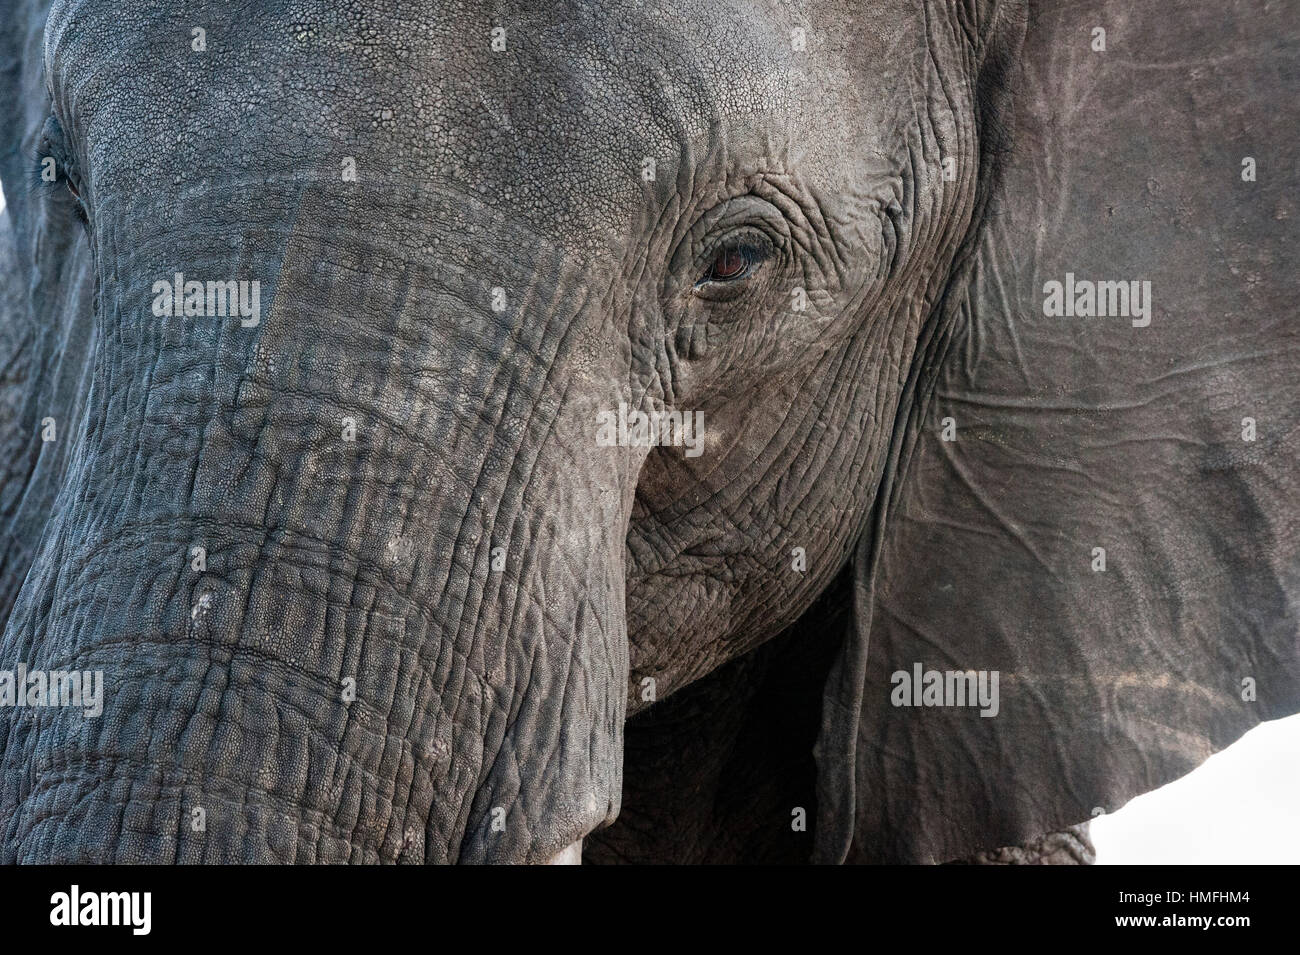 Un close-up retrato sobre un elefante africano (Loxodonta africana), el Parque Nacional Chobe, Botswana Foto de stock